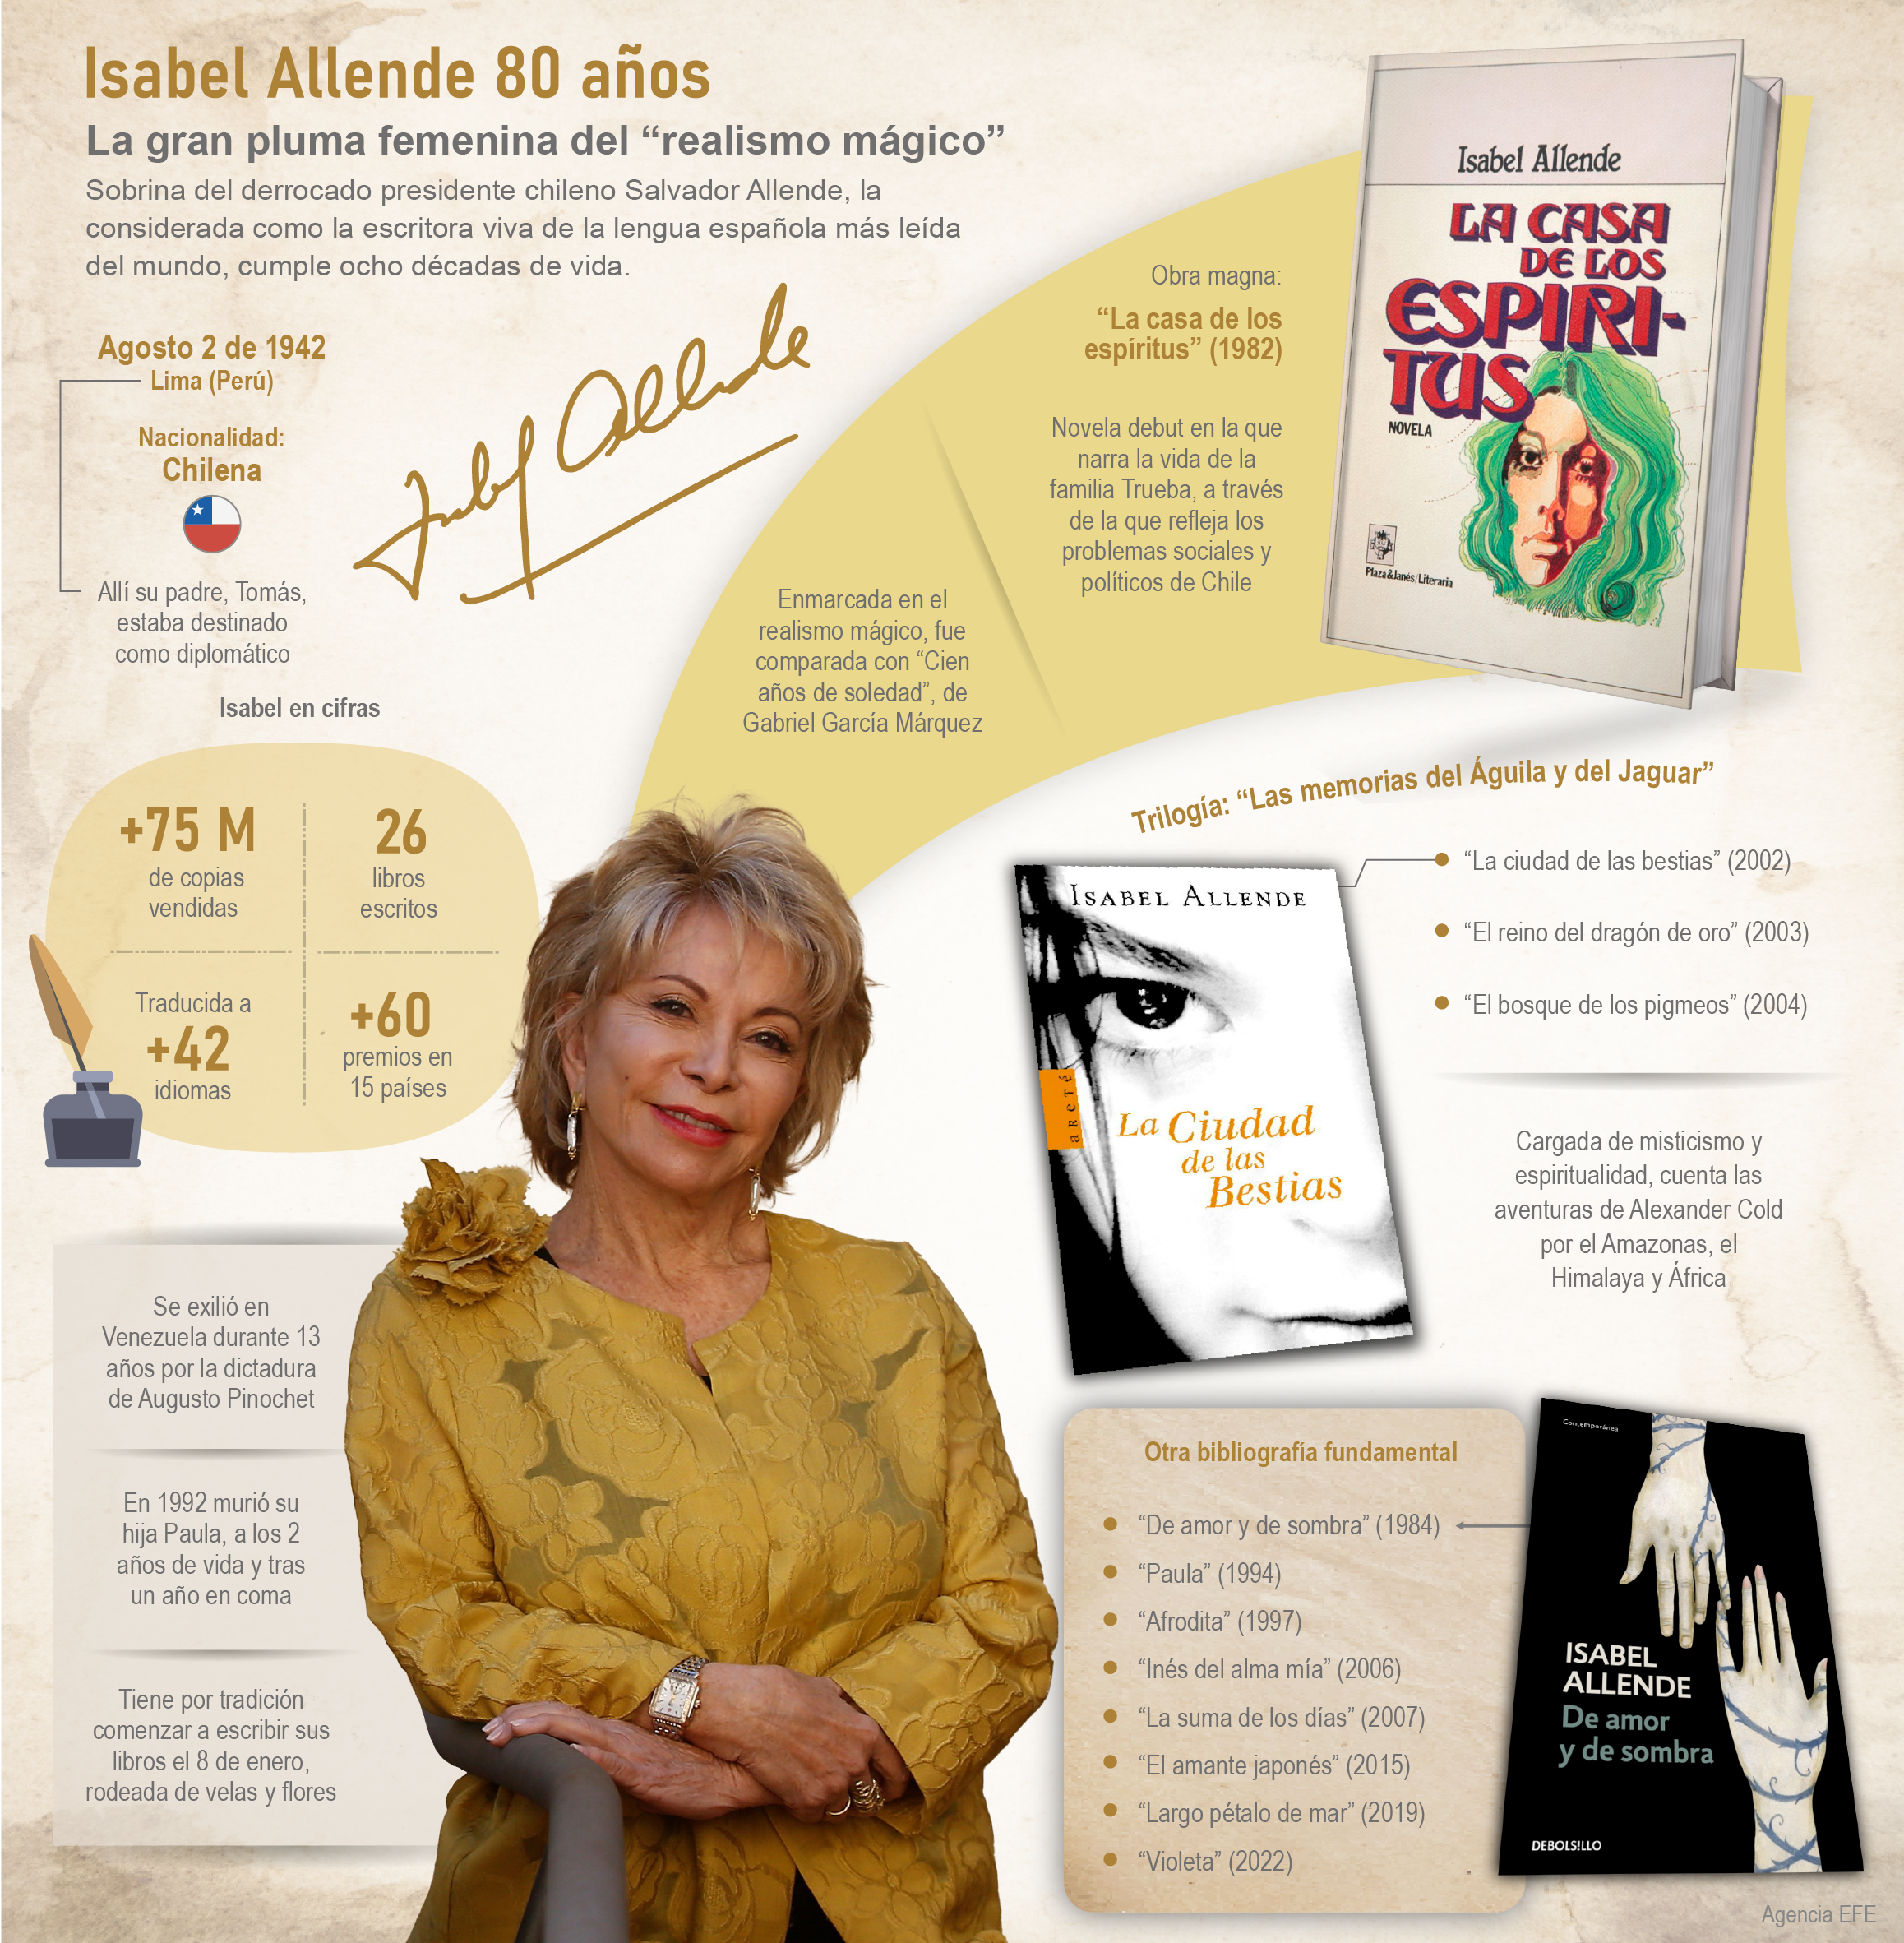 Isabel Allende 80 años: La gran pluma femenina del realismo mágico